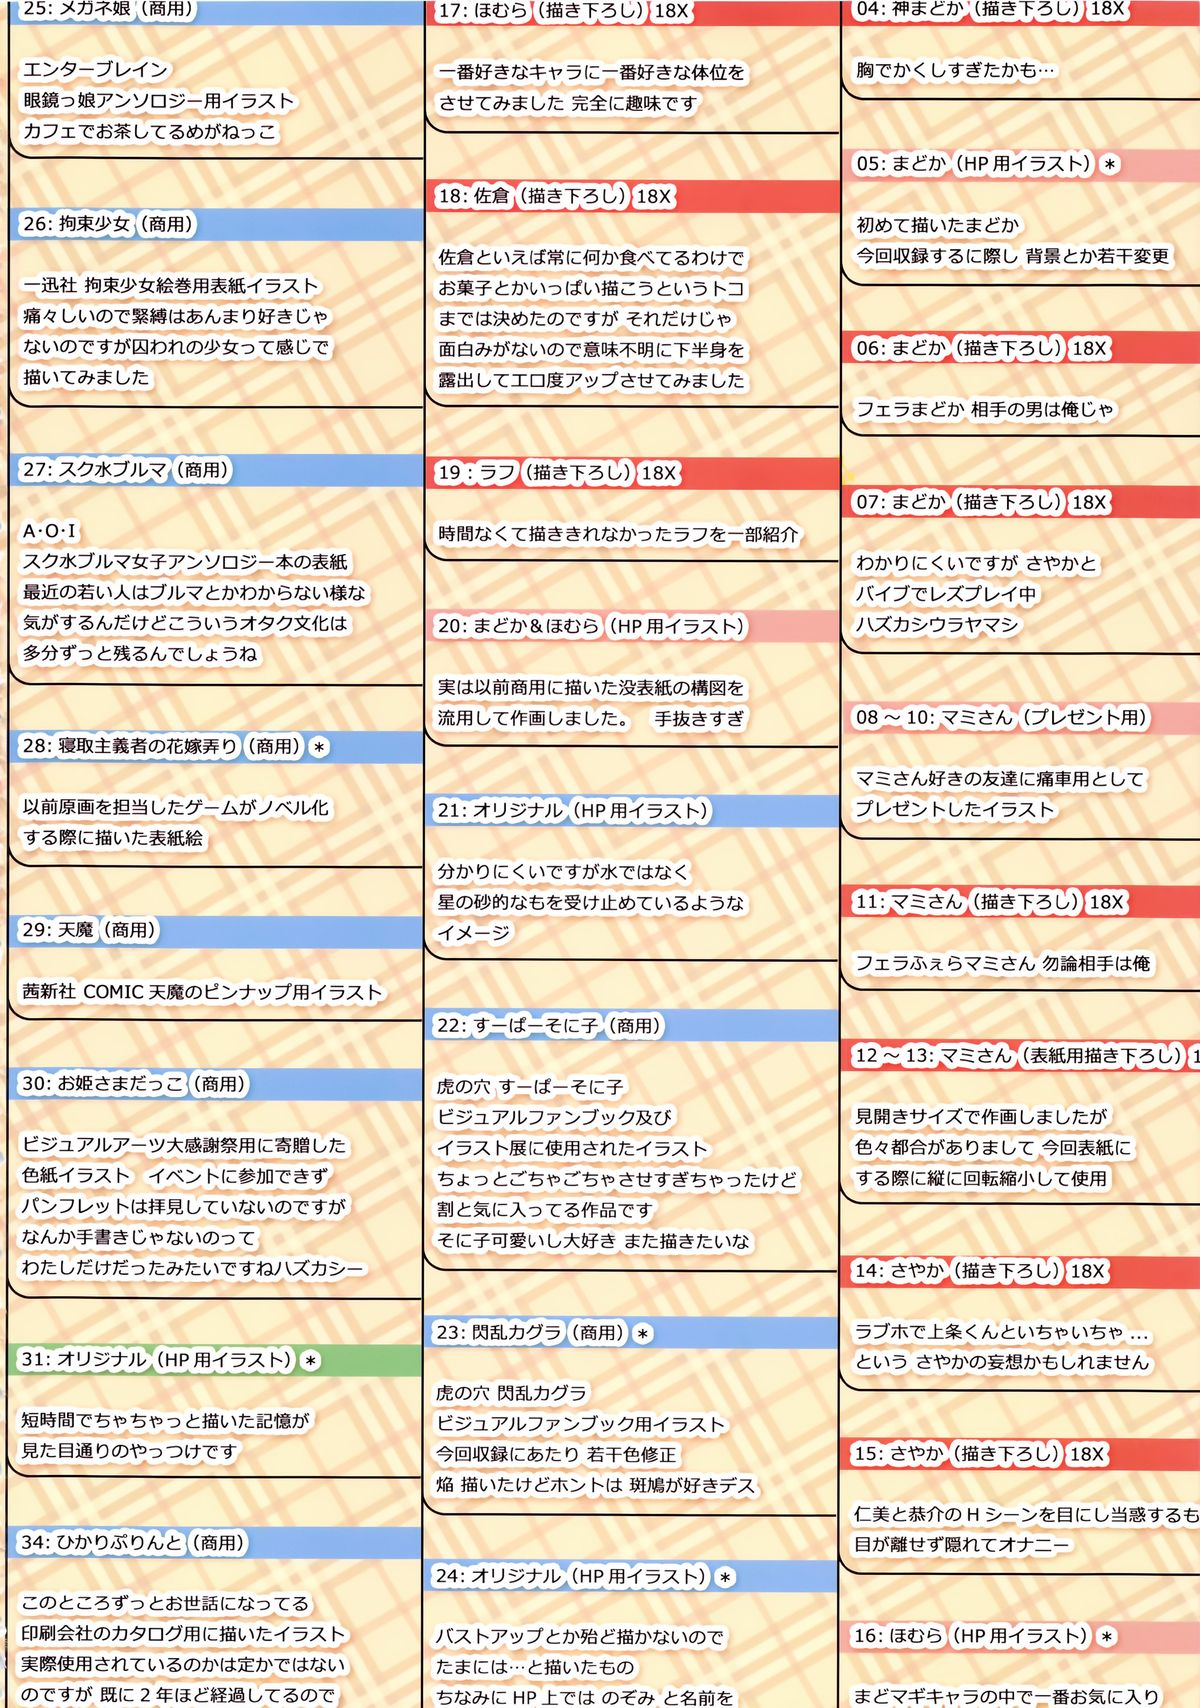 (C83) [TRI-MOON! (みかづきあきら!)] TRI-MOON! full color collection Vol.12 ANCORA (魔法少女まどか☆マギカ)